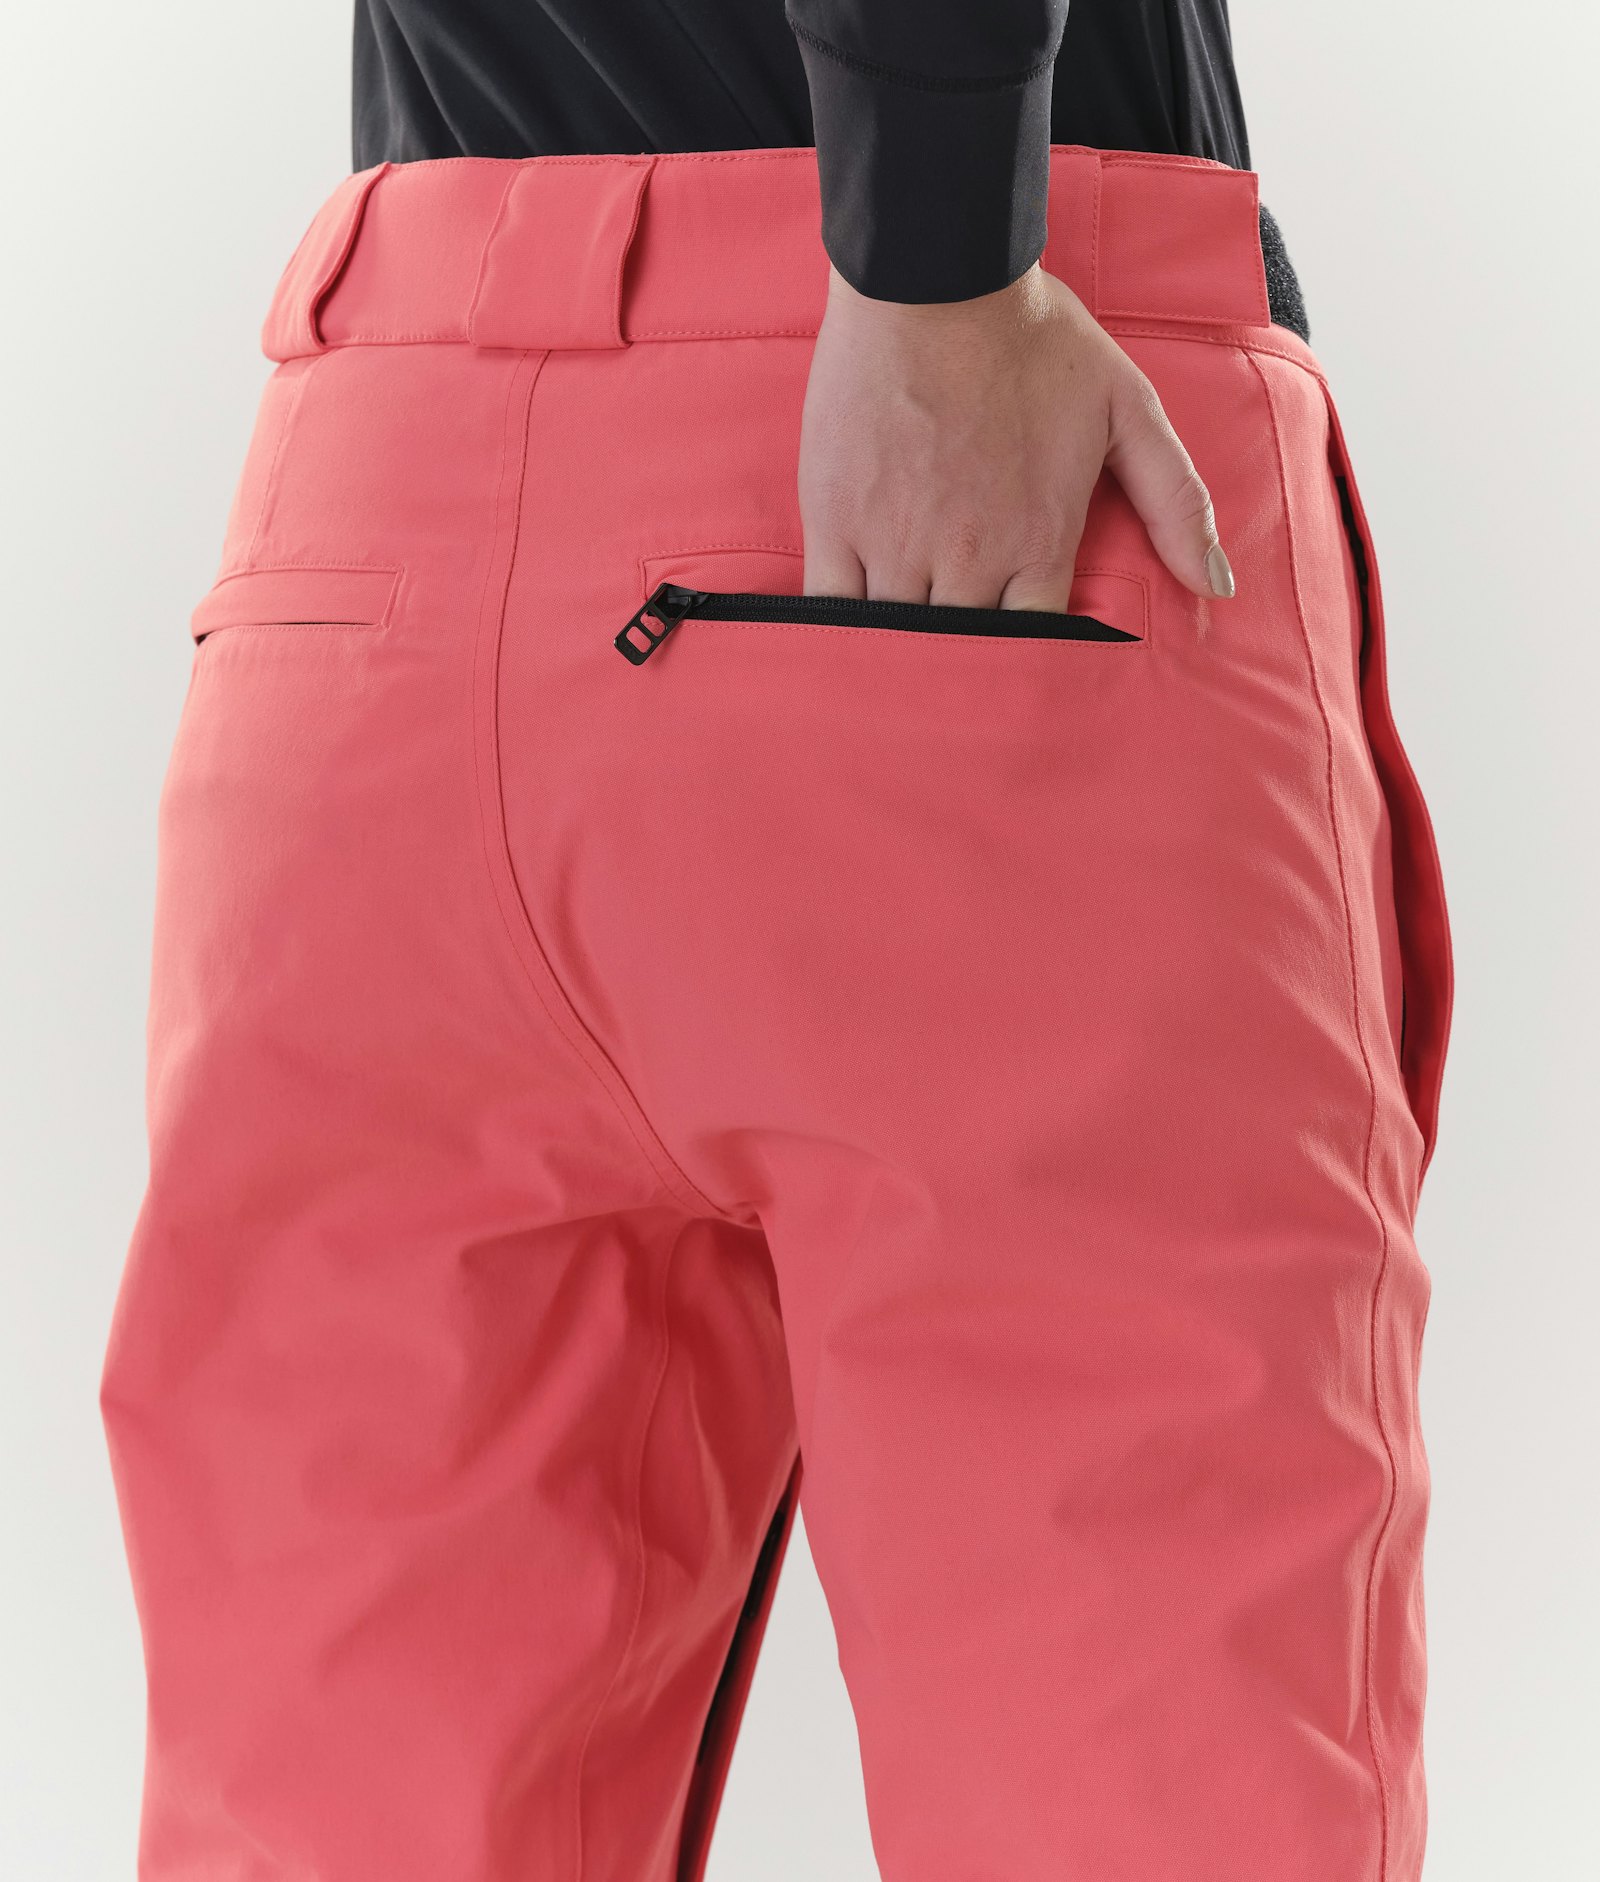 Dope Con W 2020 Pantalones Esquí Mujer Coral